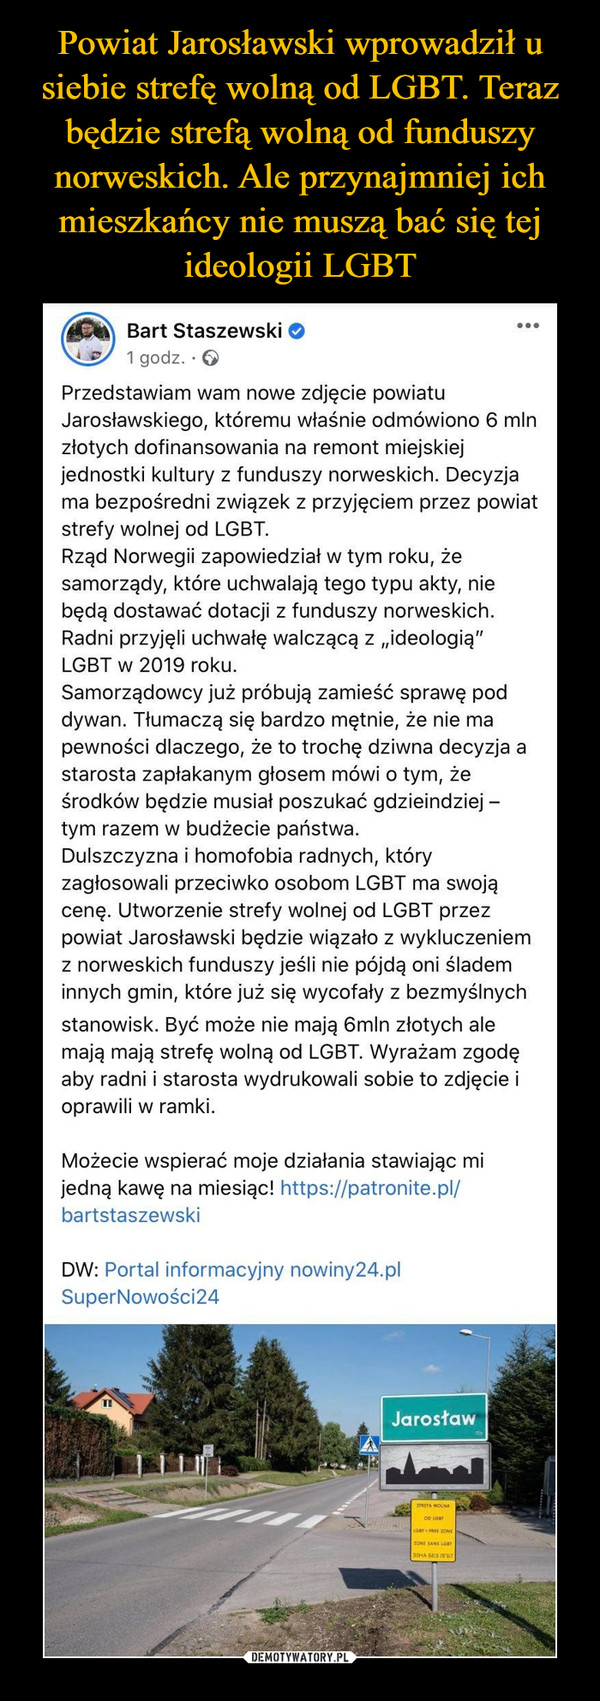  –  Bart Staszewski•..1 godz. · OPrzedstawiam wam nowe zdjęcie powiatuJarosławskiego, któremu właśnie odmówiono 6 mlnzłotych dofinansowania na remont miejskiejjednostki kultury z funduszy norweskich. Decyzjama bezpośredni związek z przyjęciem przez powiatstrefy wolnej od LGBT.Rząd Norwegii zapowiedział w tym roku, żesamorządy, które uchwalają tego typu akty, niebędą dostawać dotacji z funduszy norweskich.Radni przyjęli uchwałę walczącą z „ideologią"LGBT w 2019 roku.Samorządowcy już próbują zamieść sprawę poddywan. Tłumaczą się bardzo mętnie, że nie mapewności dlaczego, że to trochę dziwna decyzja astarosta zapłakanym głosem mówi o tym, żeśrodków będzie musiał poszukać gdzieindziej -tym razem w budżecie państwa.Dulszczyzna i homofobia radnych, któryzagłosowali przeciwko osobom LGBT ma swojącenę. Utworzenie strefy wolnej od LGBT przezpowiat Jarosławski będzie wiązało z wykluczeniemz norweskich funduszy jeśli nie pójdą oni ślademinnych gmin, które już się wycofały z bezmyślnychstanowisk. Być może nie mają 6mln złotych alemają mają strefę wolną od LGBT. Wyrażam zgodęaby radni i starosta wydrukowali sobie to zdjęcie ioprawili w ramki.Możecie wspierać moje działania stawiając mijedną kawę na miesiąc! https://patronite.pl/bartstaszewskiDW: Portal informacyjny nowiny24.plSuperNowości24JarosławSTREFA WOLNAZONE SANS LGBT30HA BE3 JCET